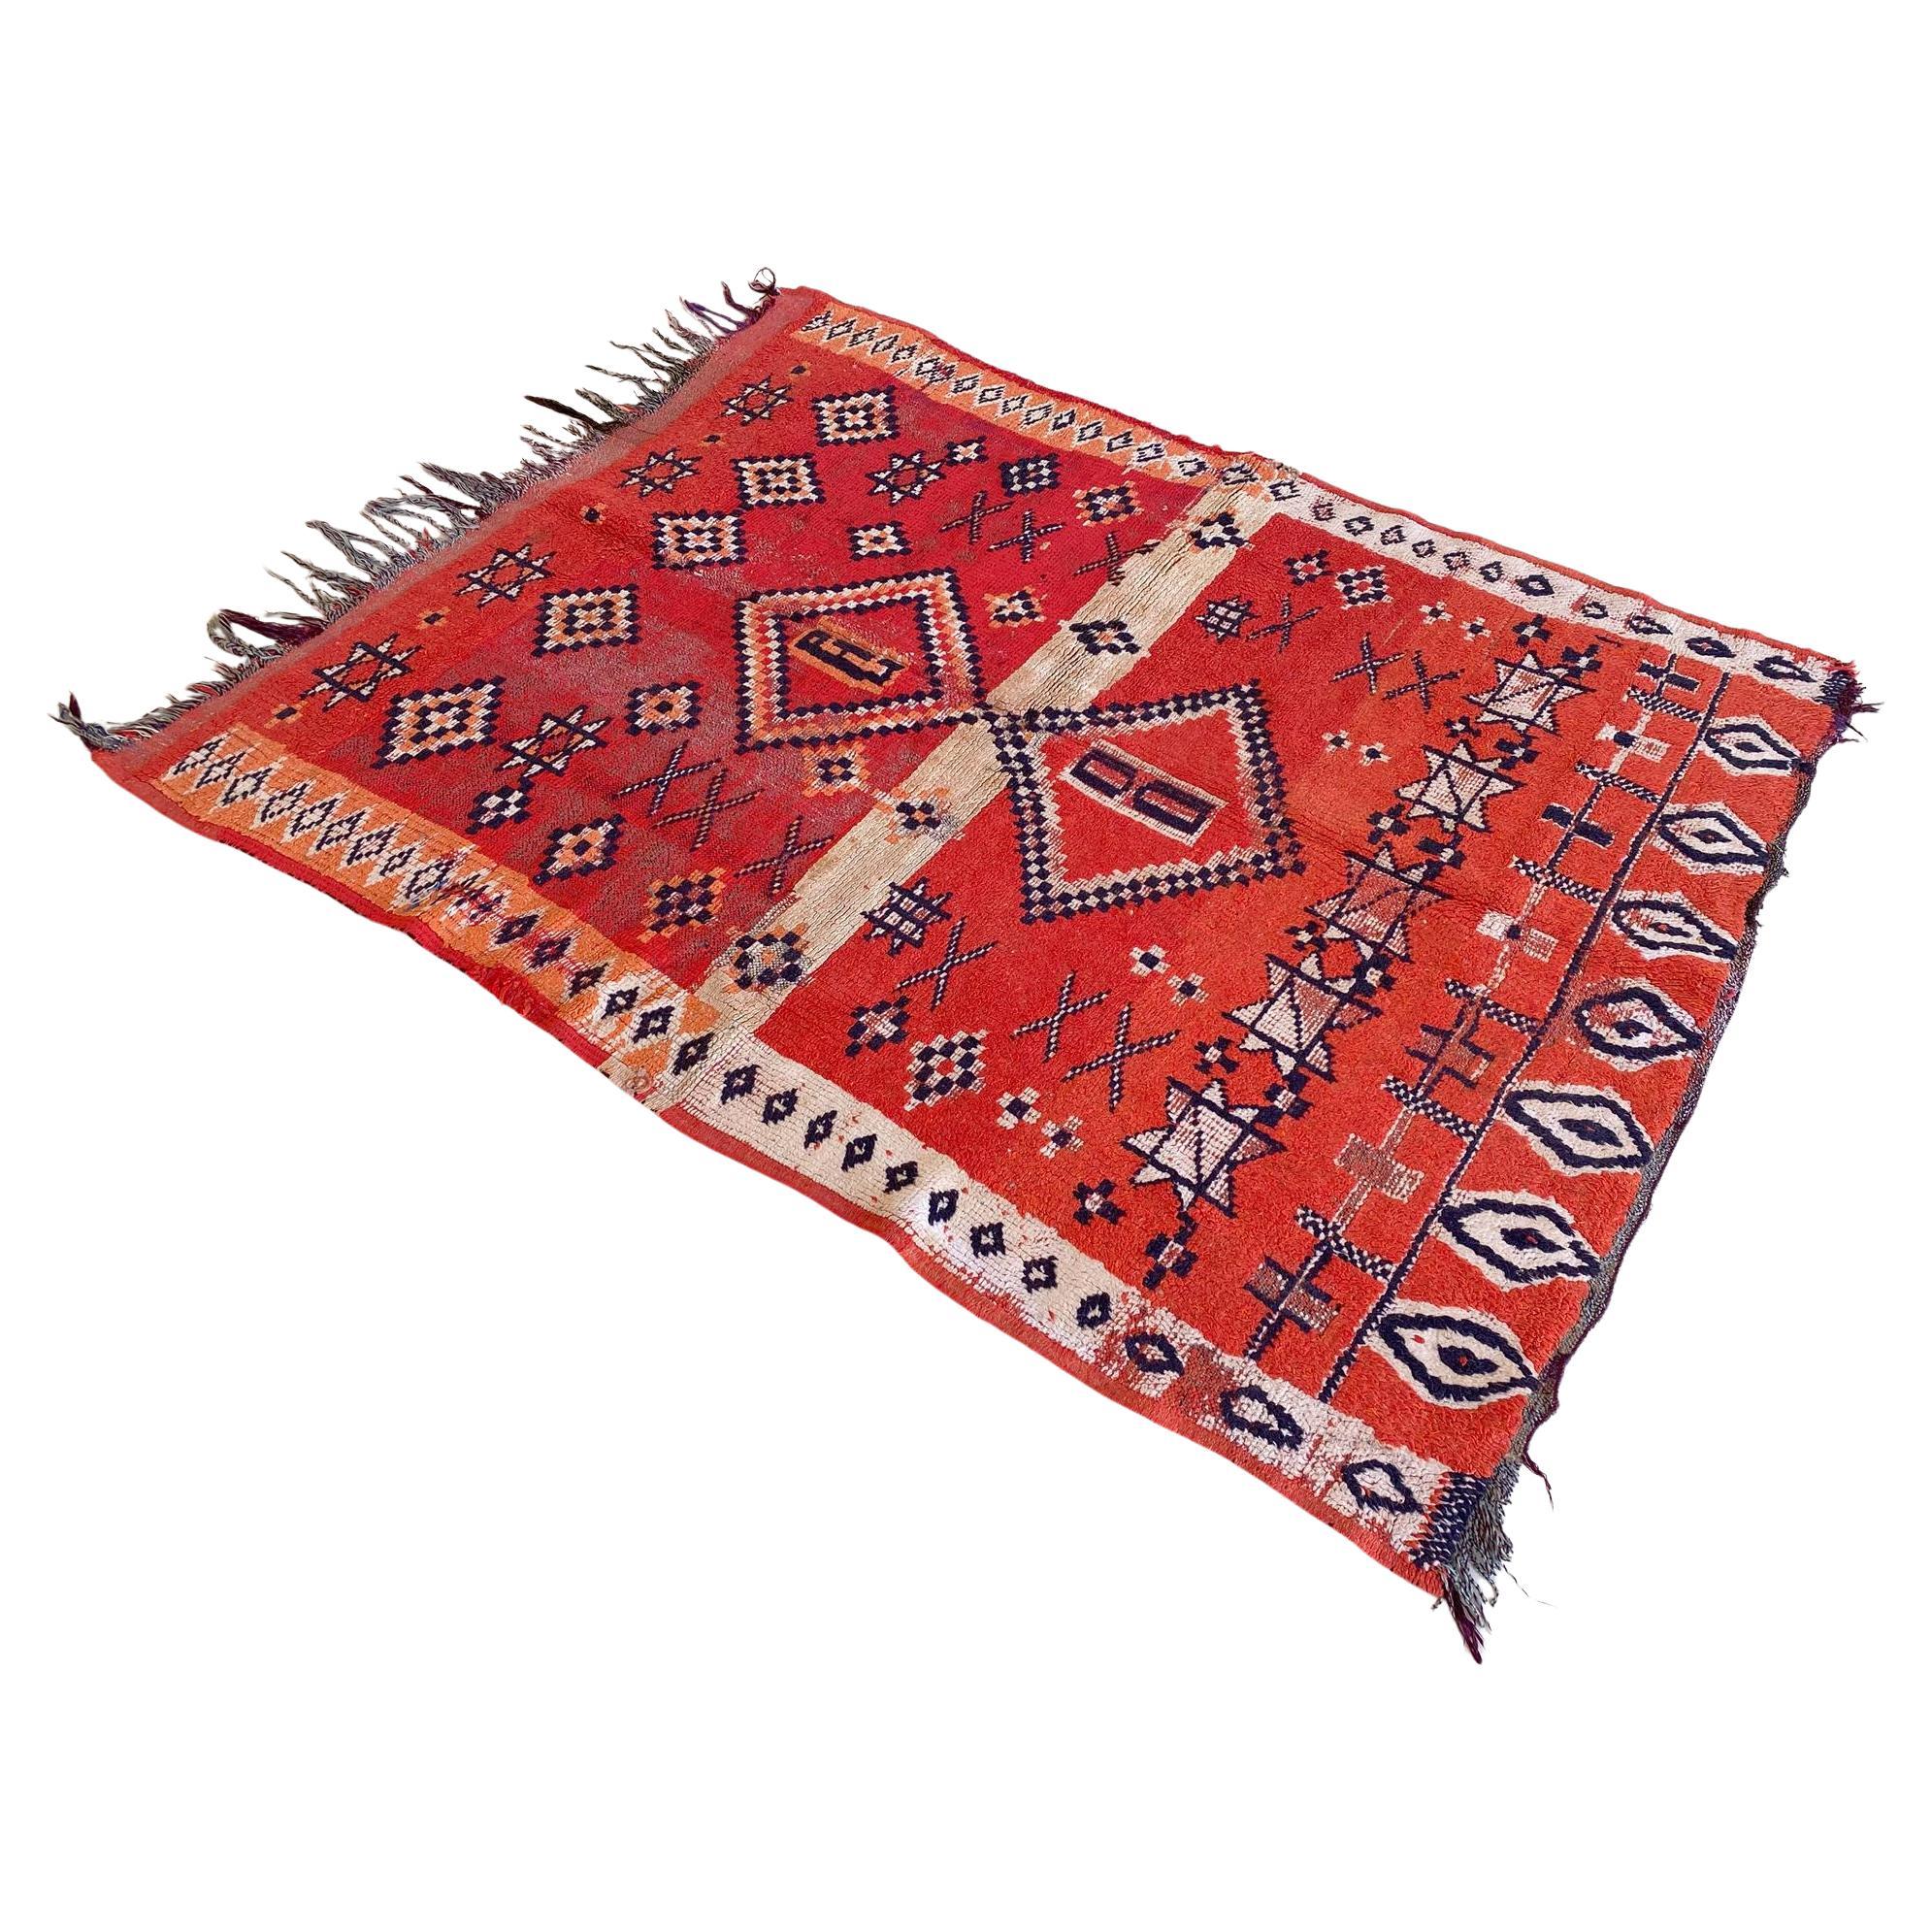 Marokkanischer Boujad-Teppich im Vintage-Stil - Rot - 4x5feet / 124x153cm